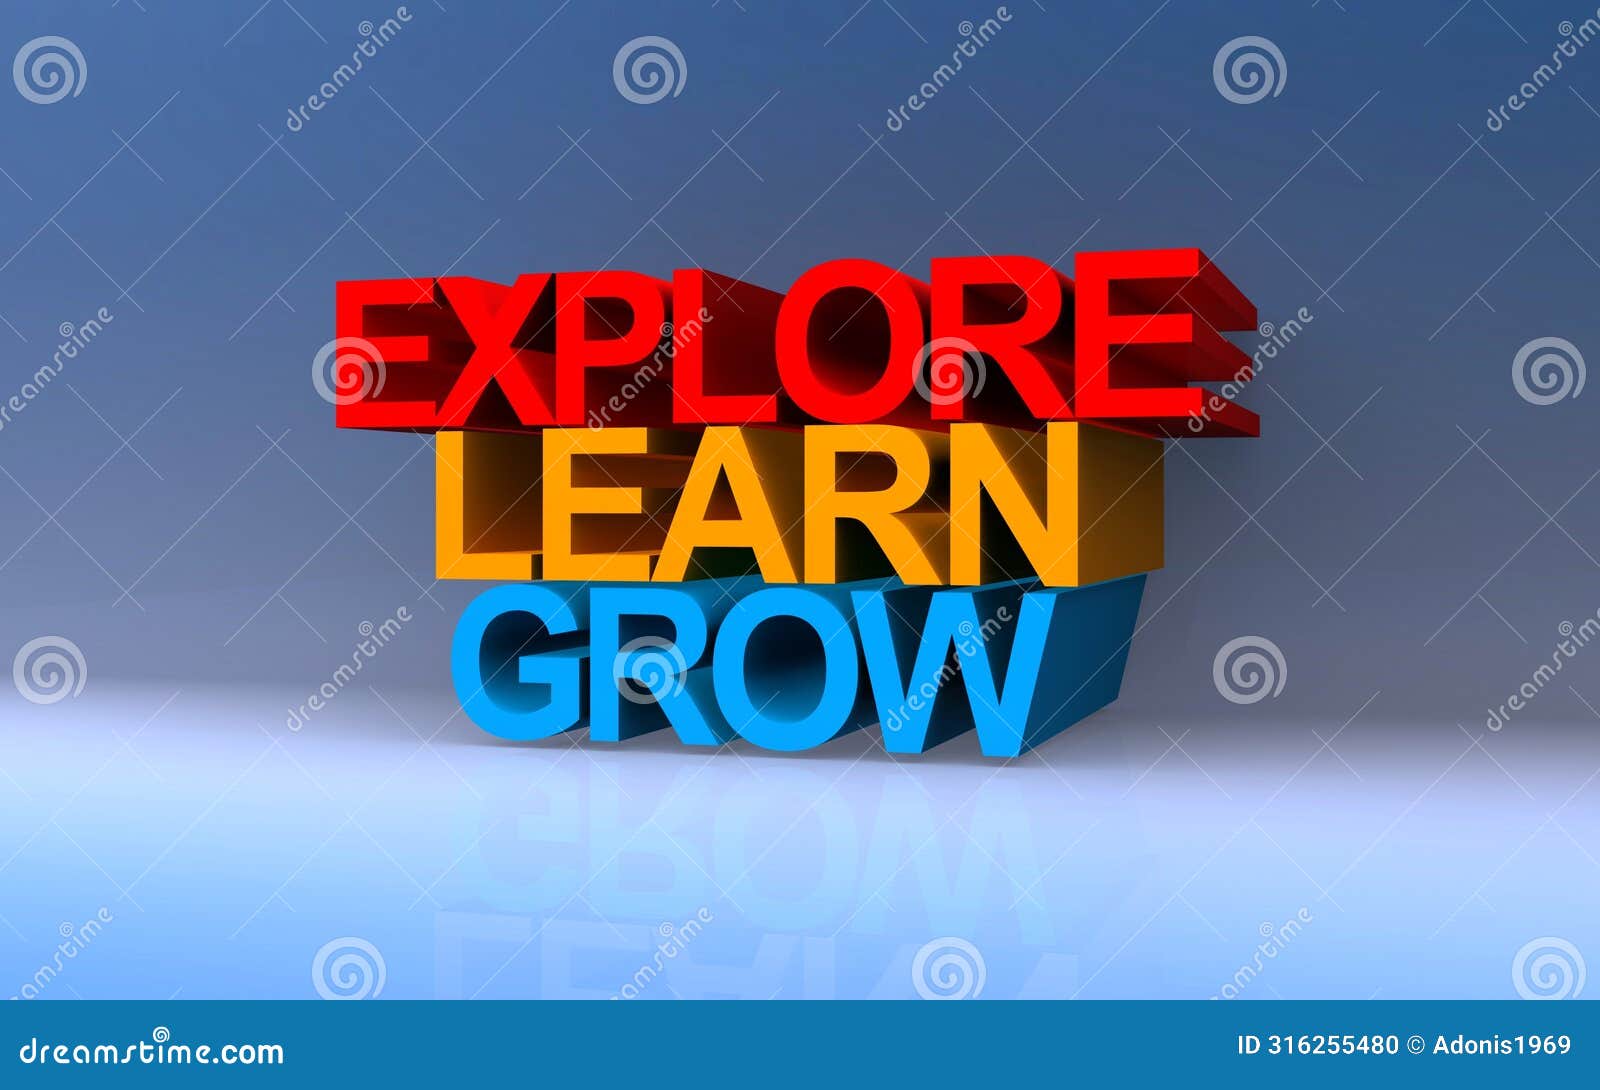 explore learn grow on blue